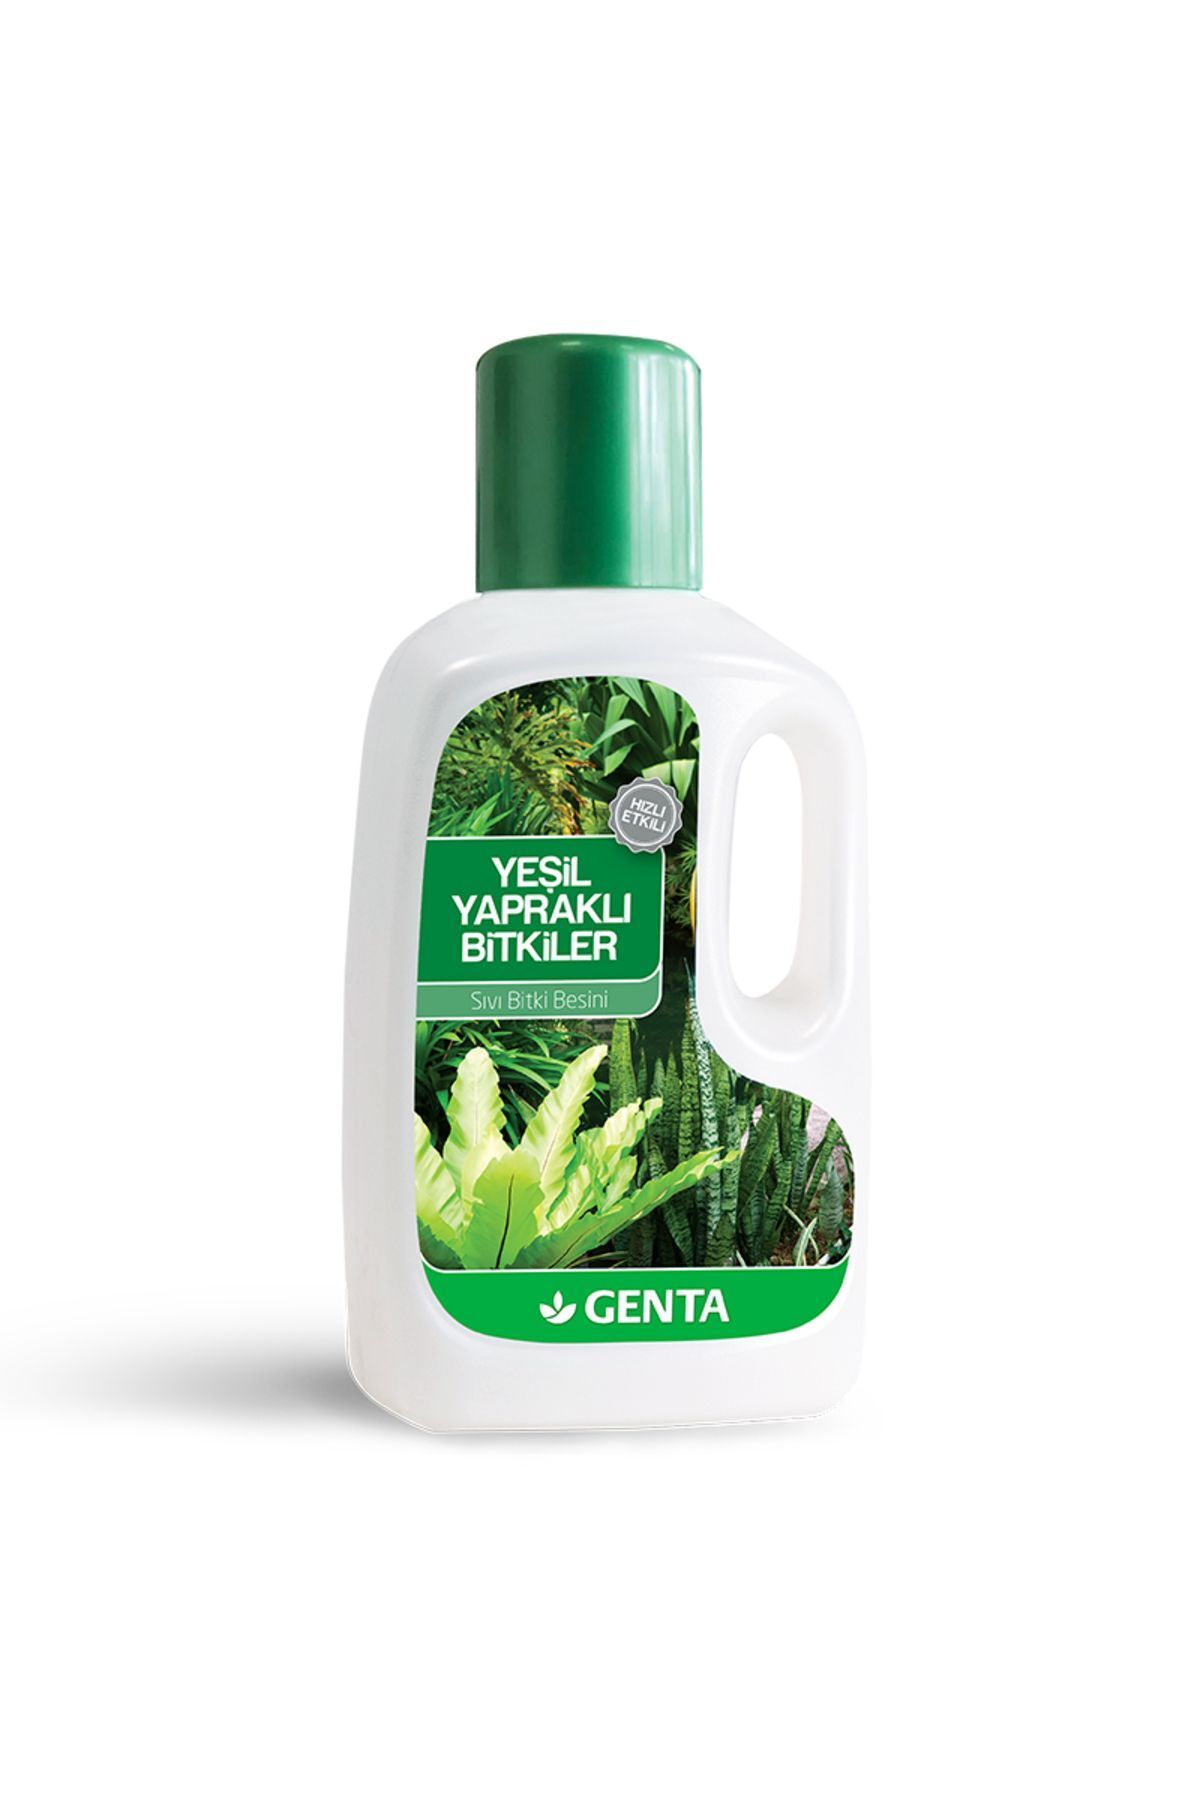 Genta Yeşil Yapraklı Bitkiler Için Sıvı Bitki Besini Sıvı Gübre 500 ml